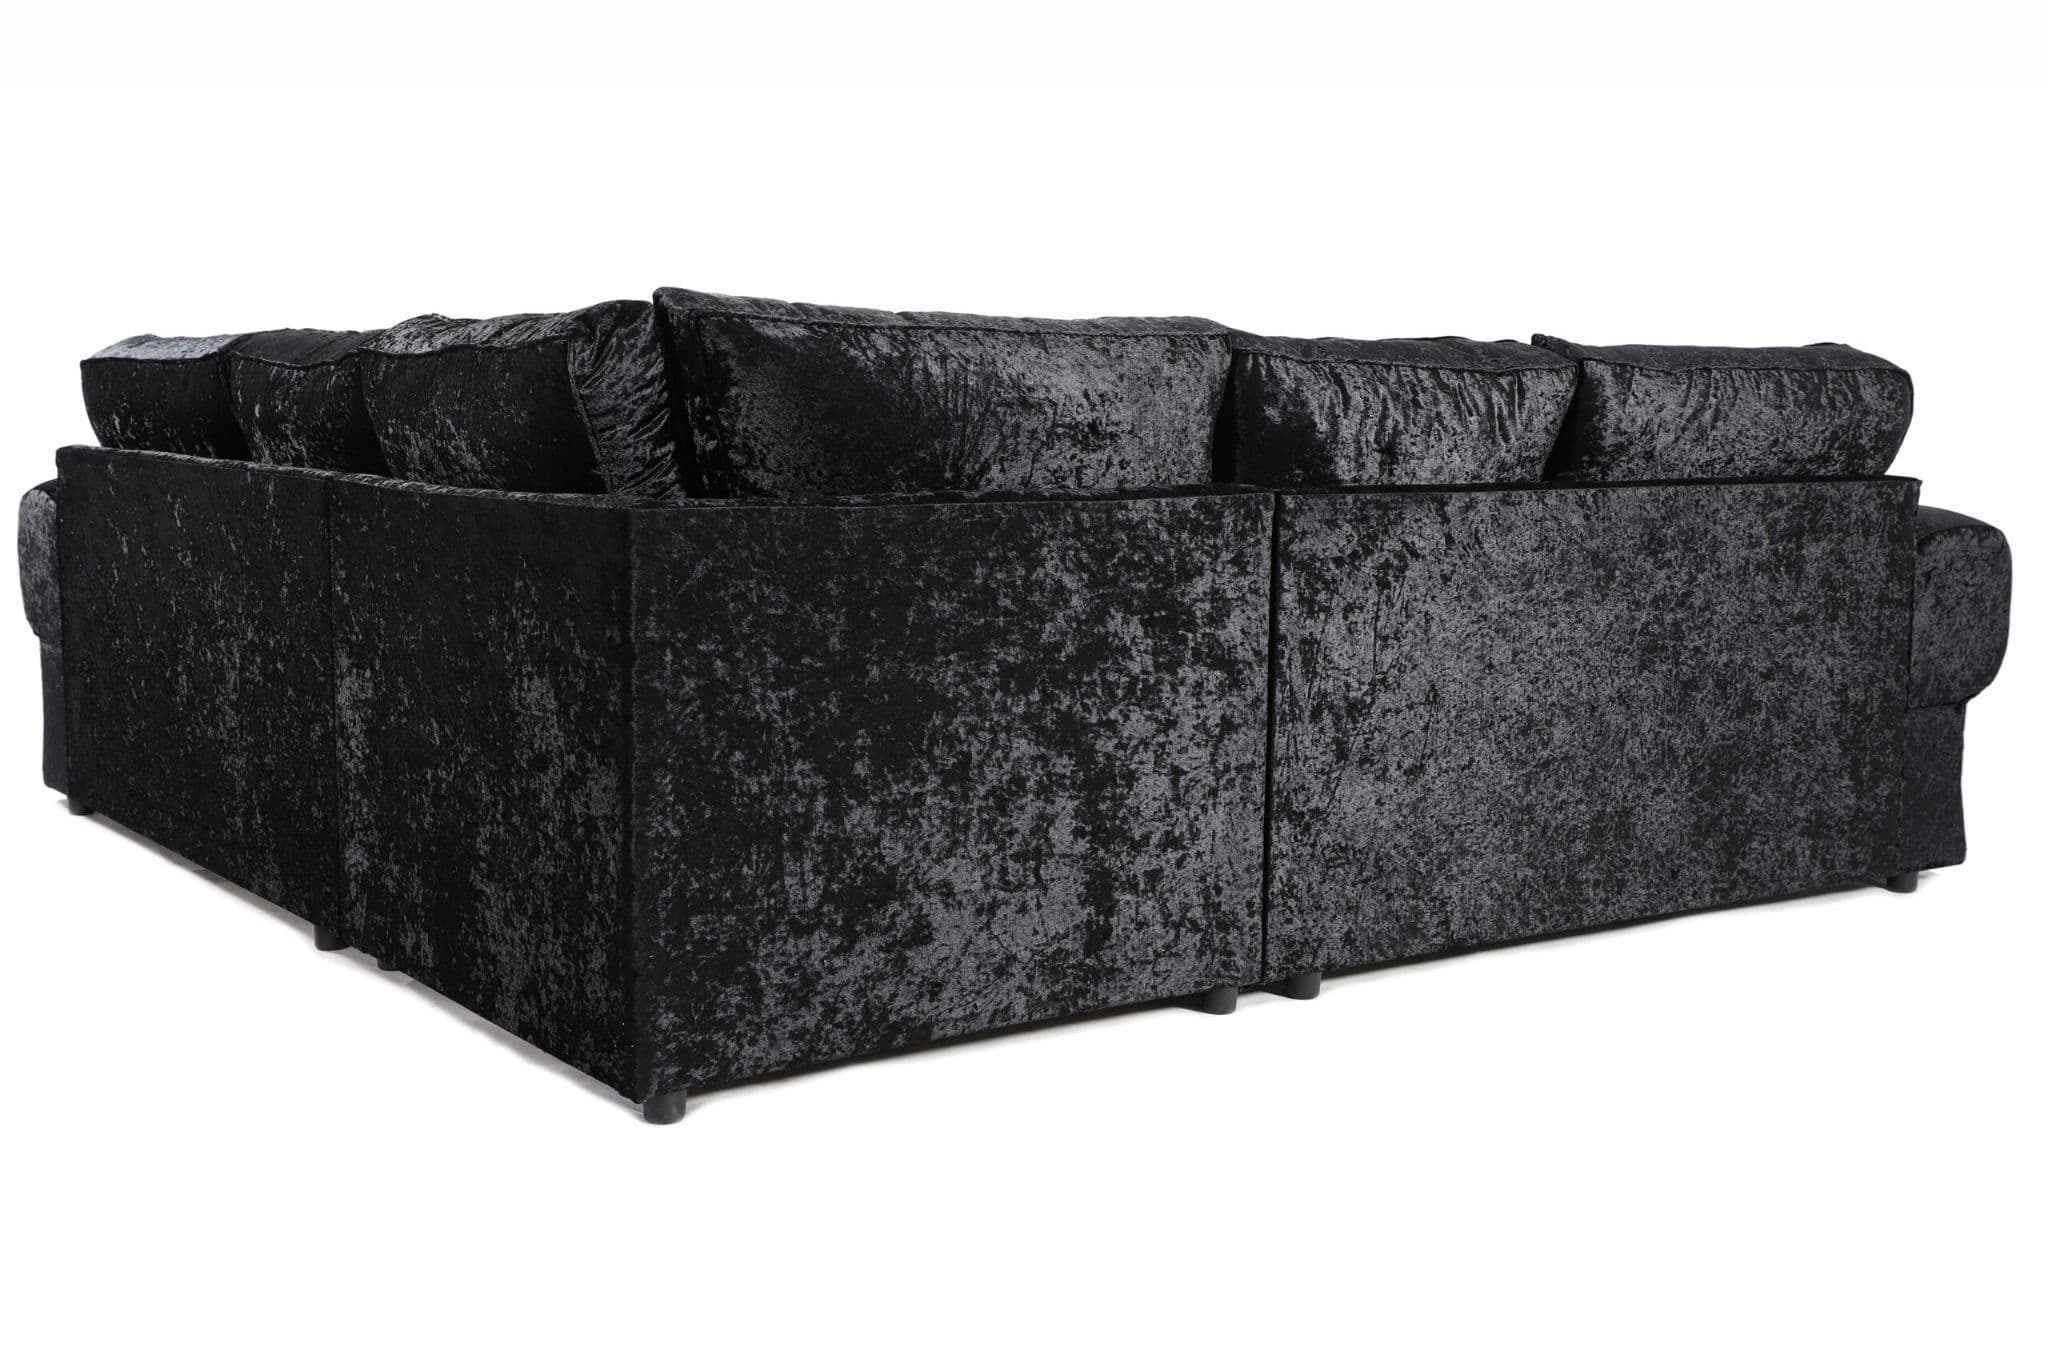 Sector Large Corner Sofa Black Shimmer